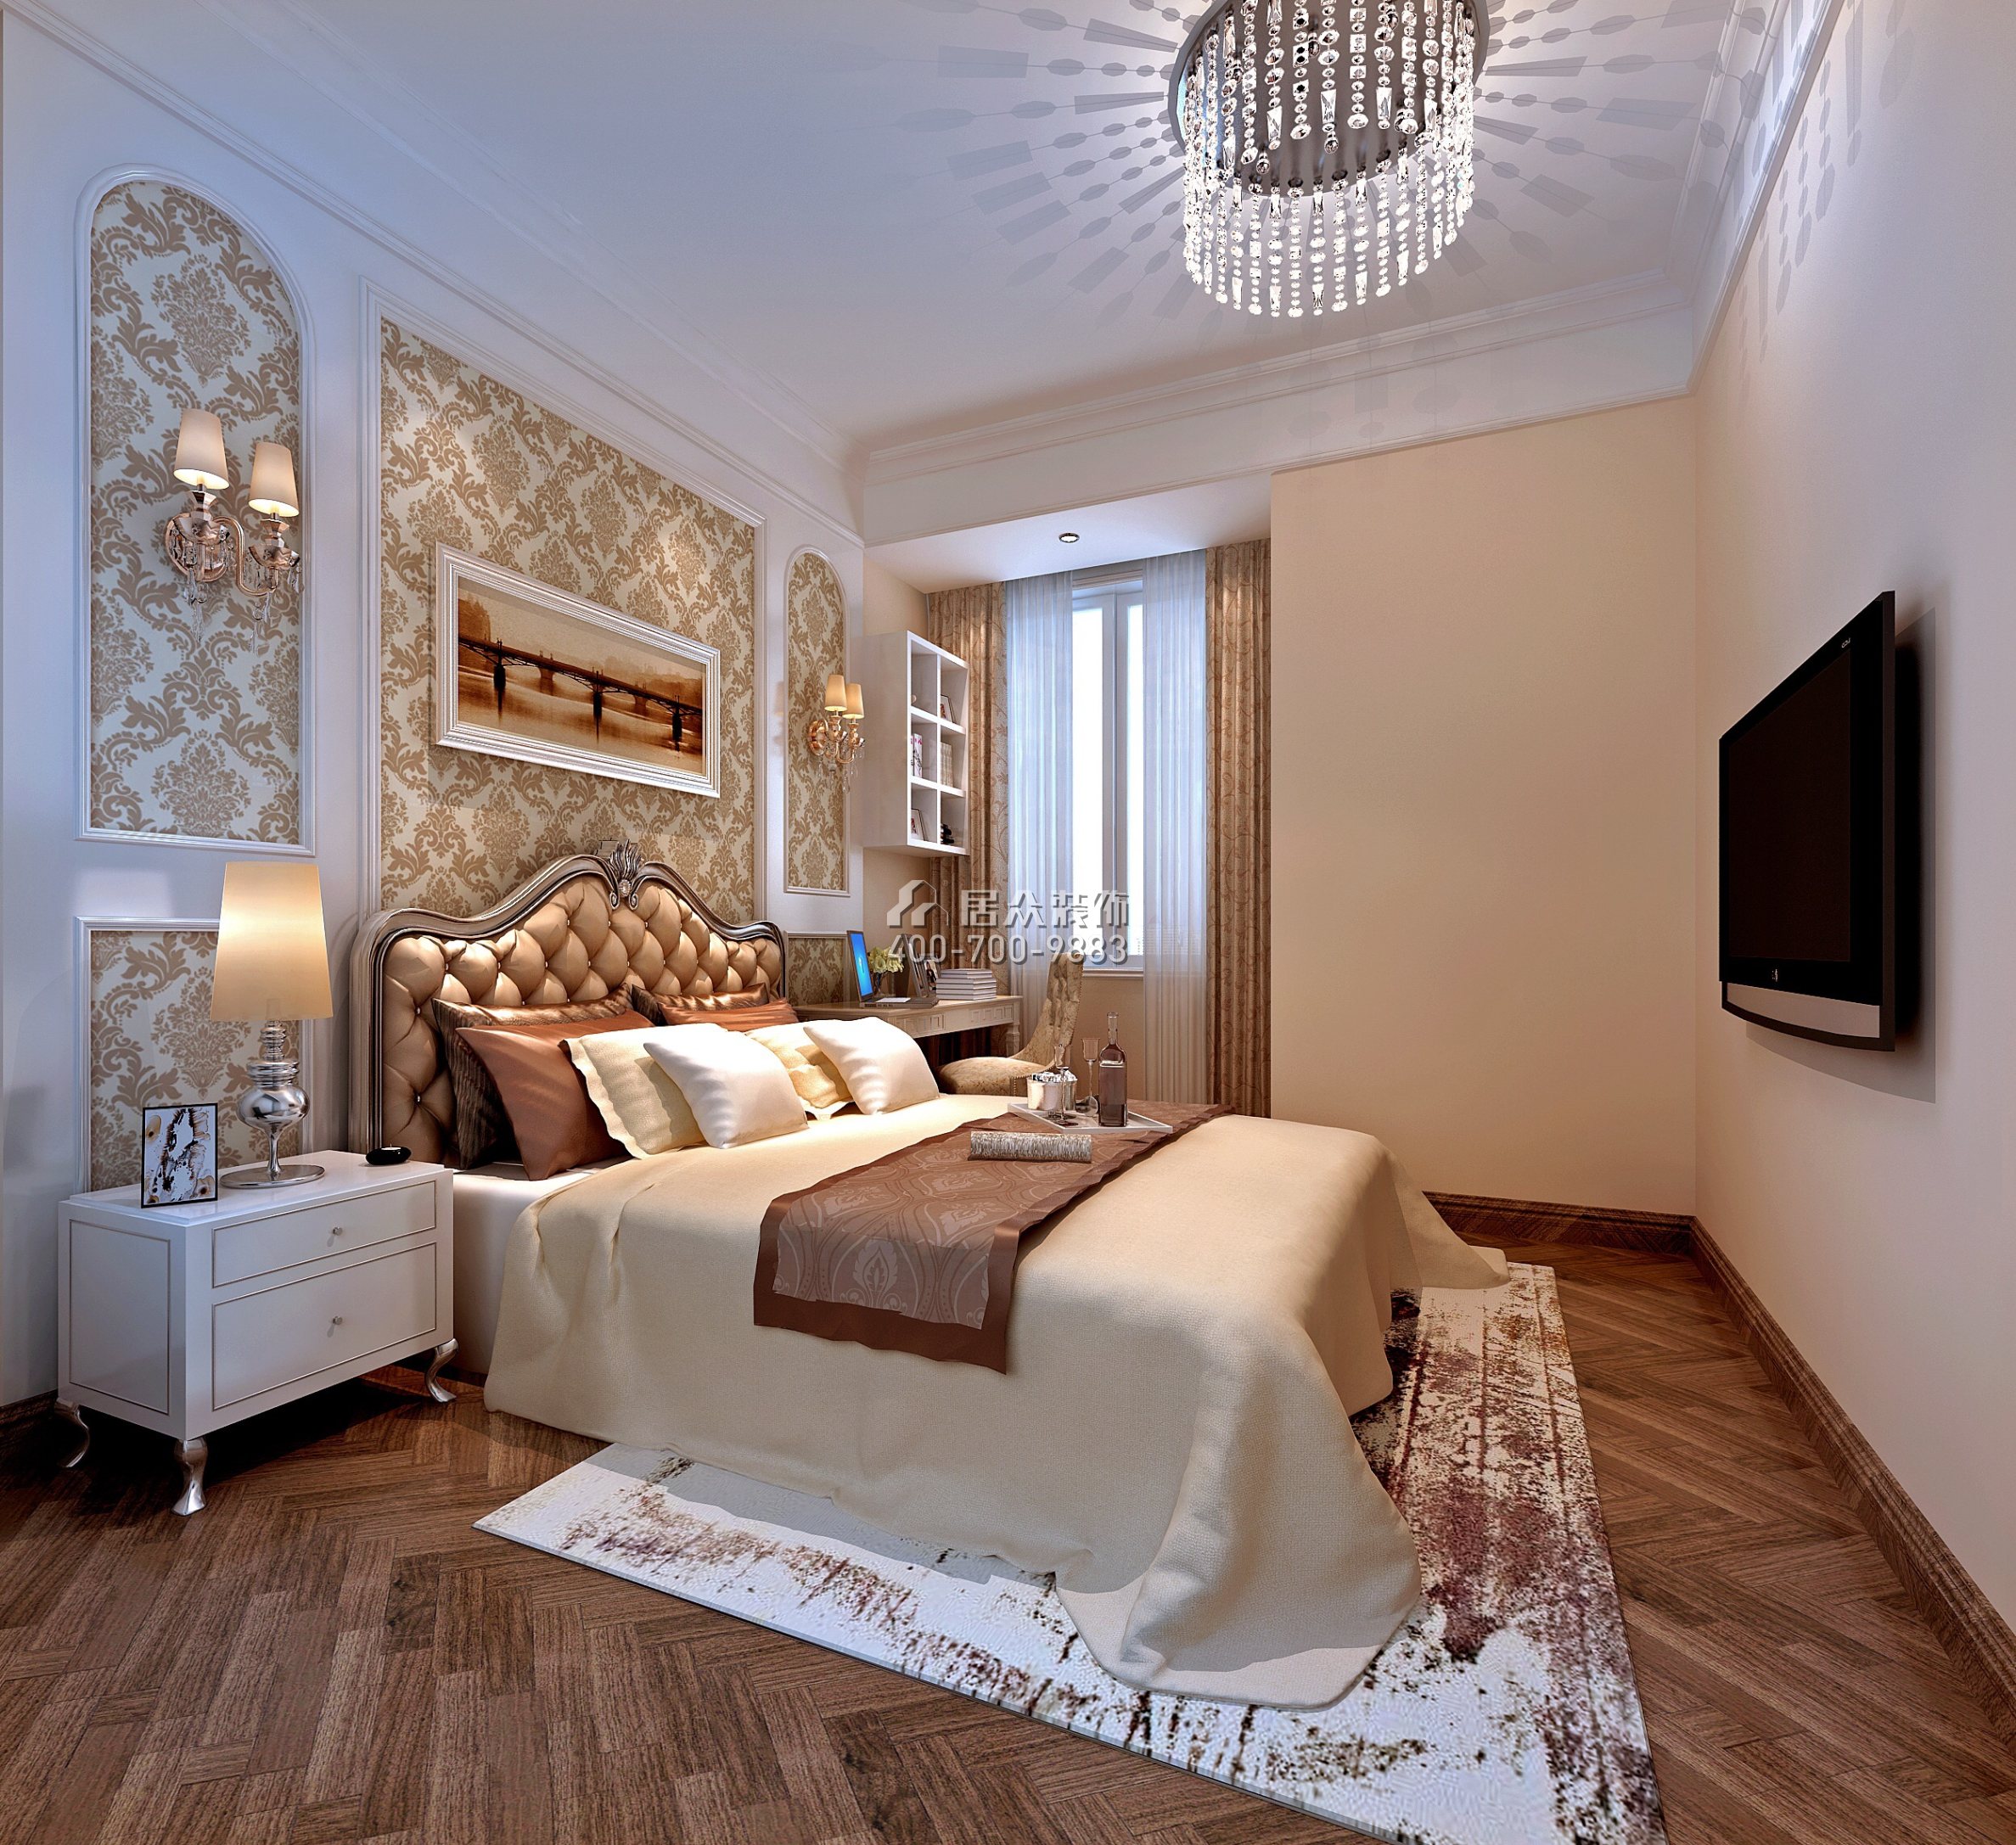 星河丹堤139平方米欧式风格平层户型卧室装修效果图